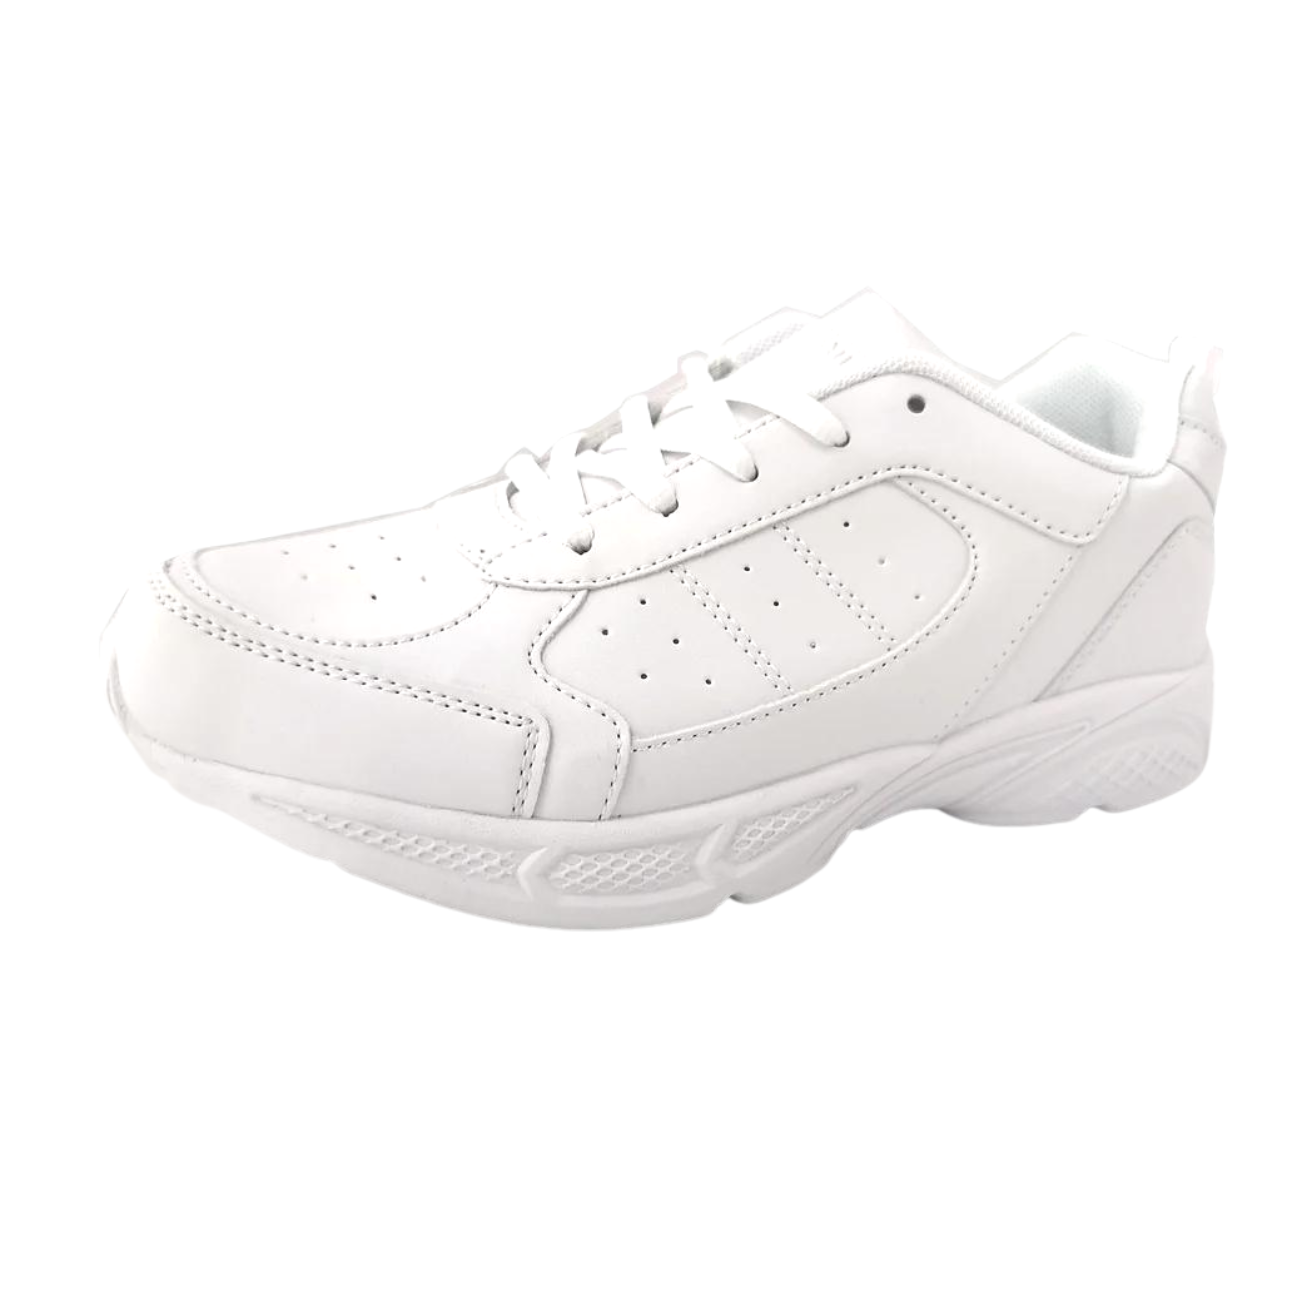 Neckermann White Shoes - N9141